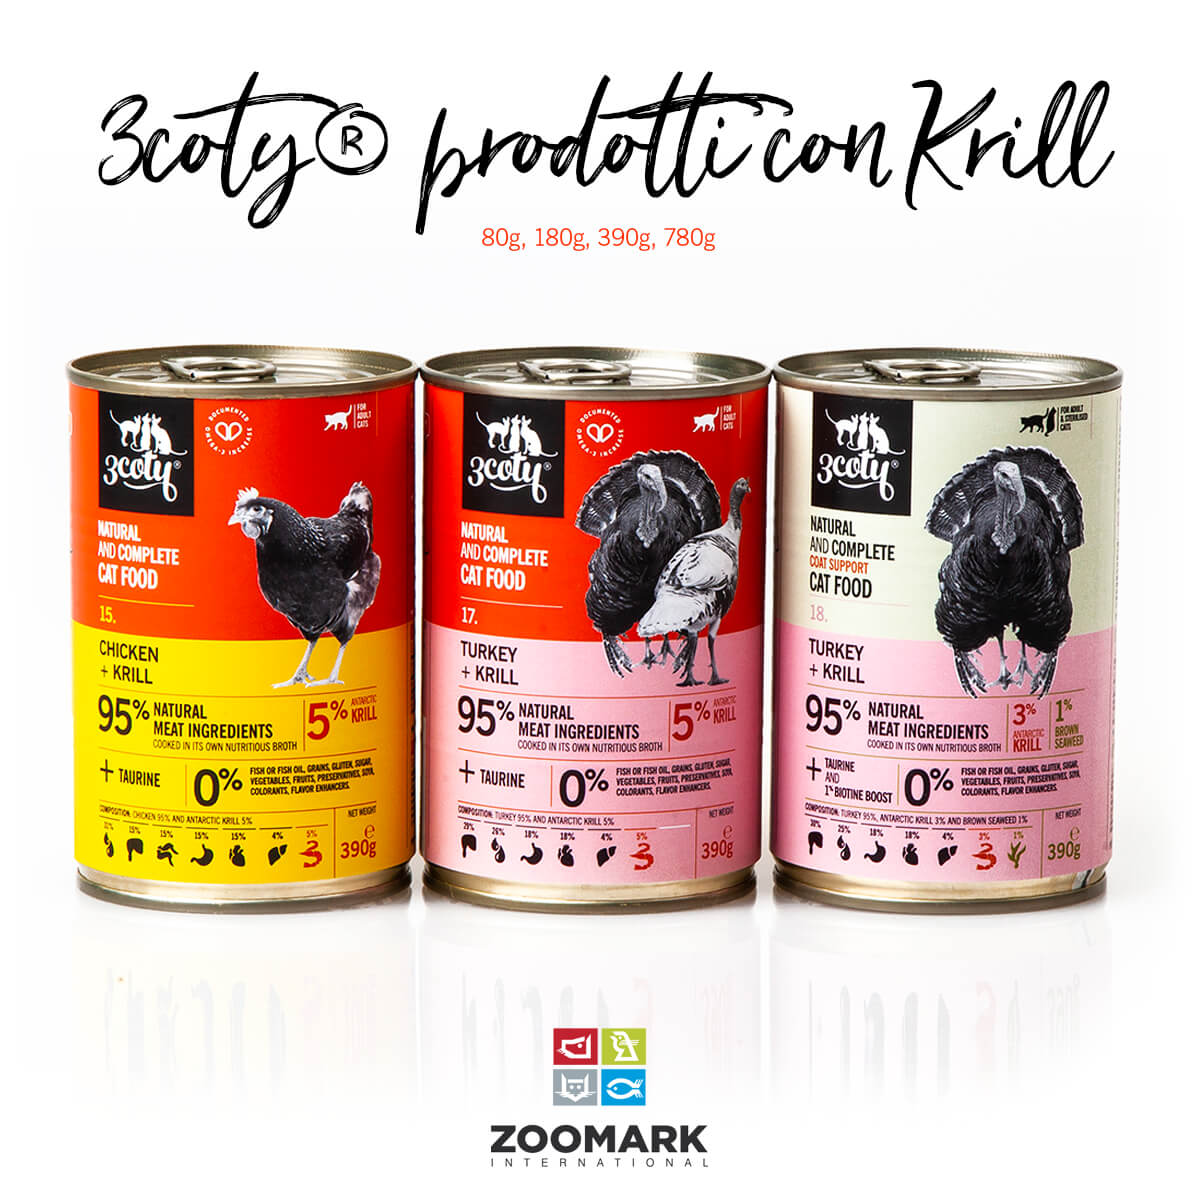 3coty® presenta la nuova gamma di alimenti al krill antartico con Aker BioMarine a Zoomark